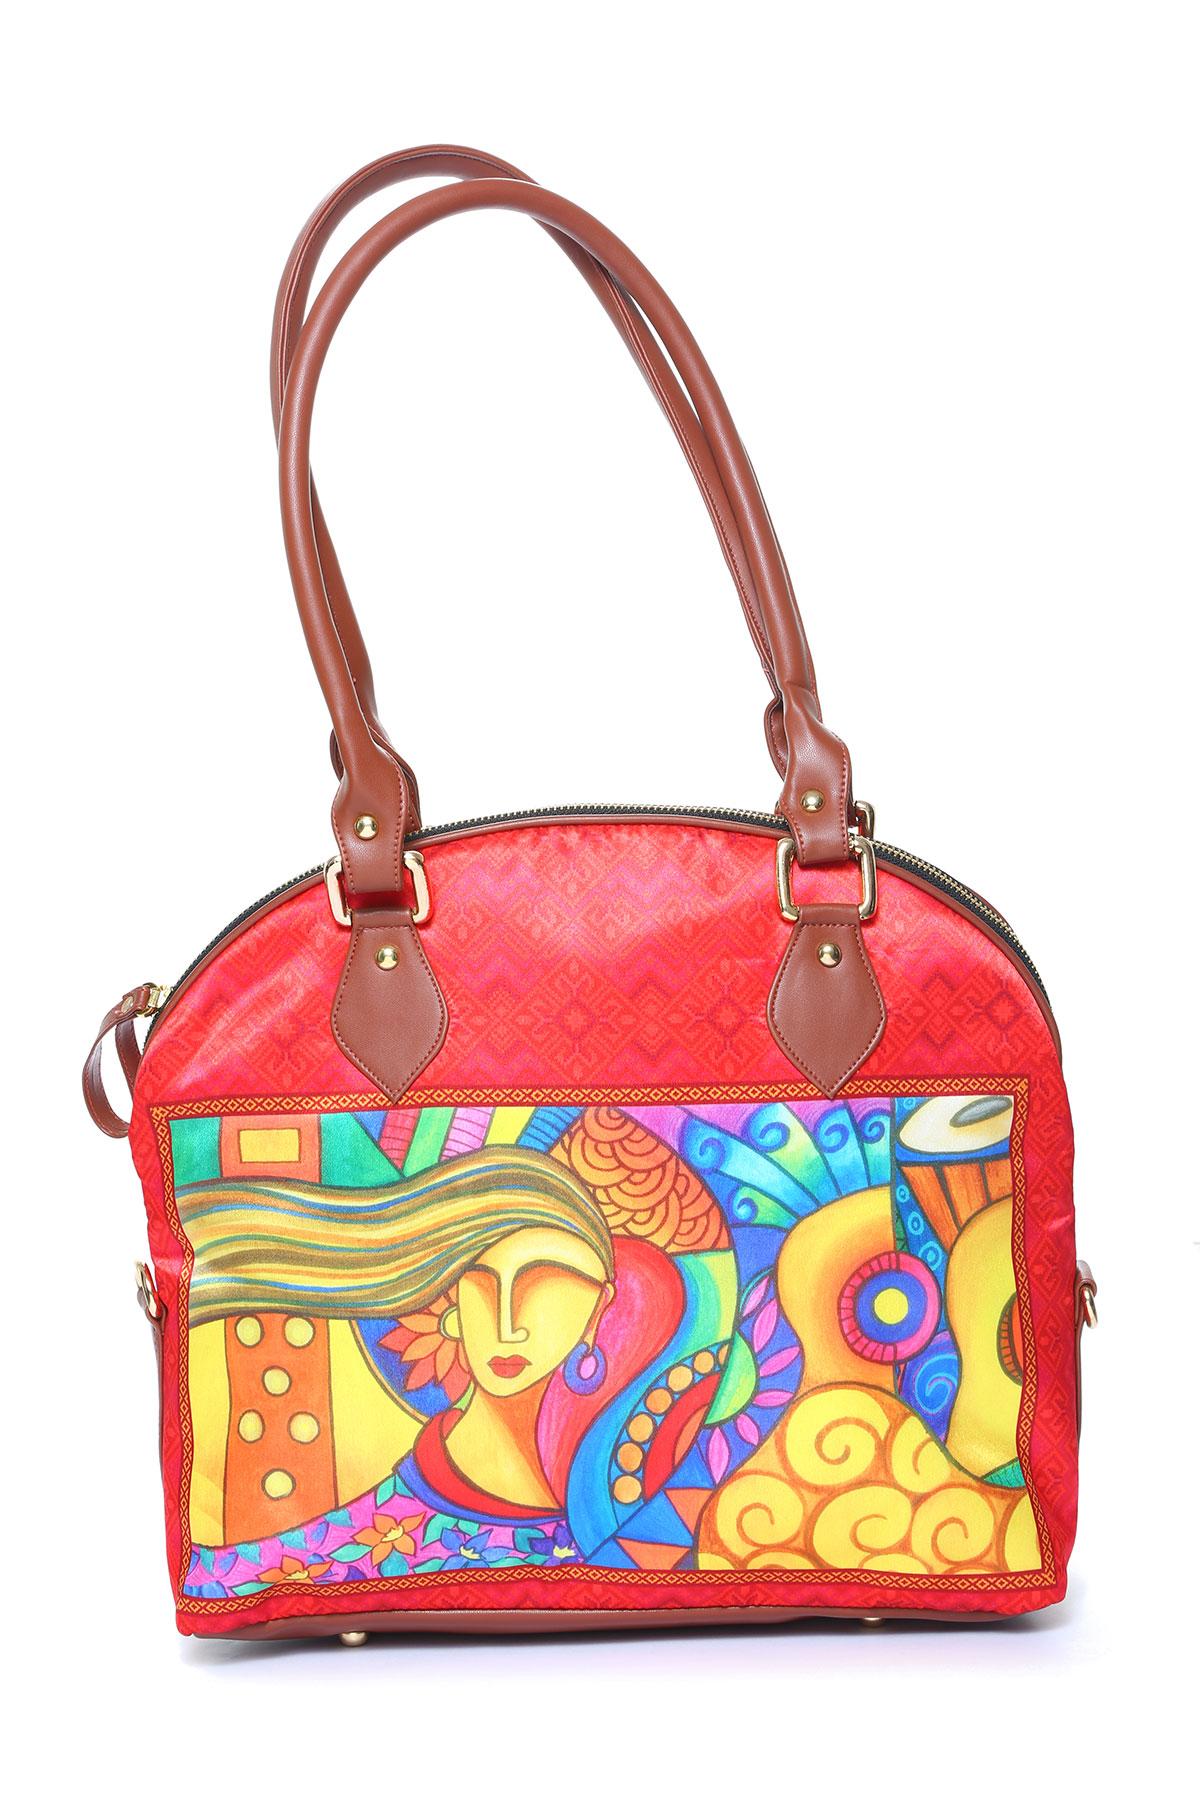 Arrimo designer inspired handbag - Gem